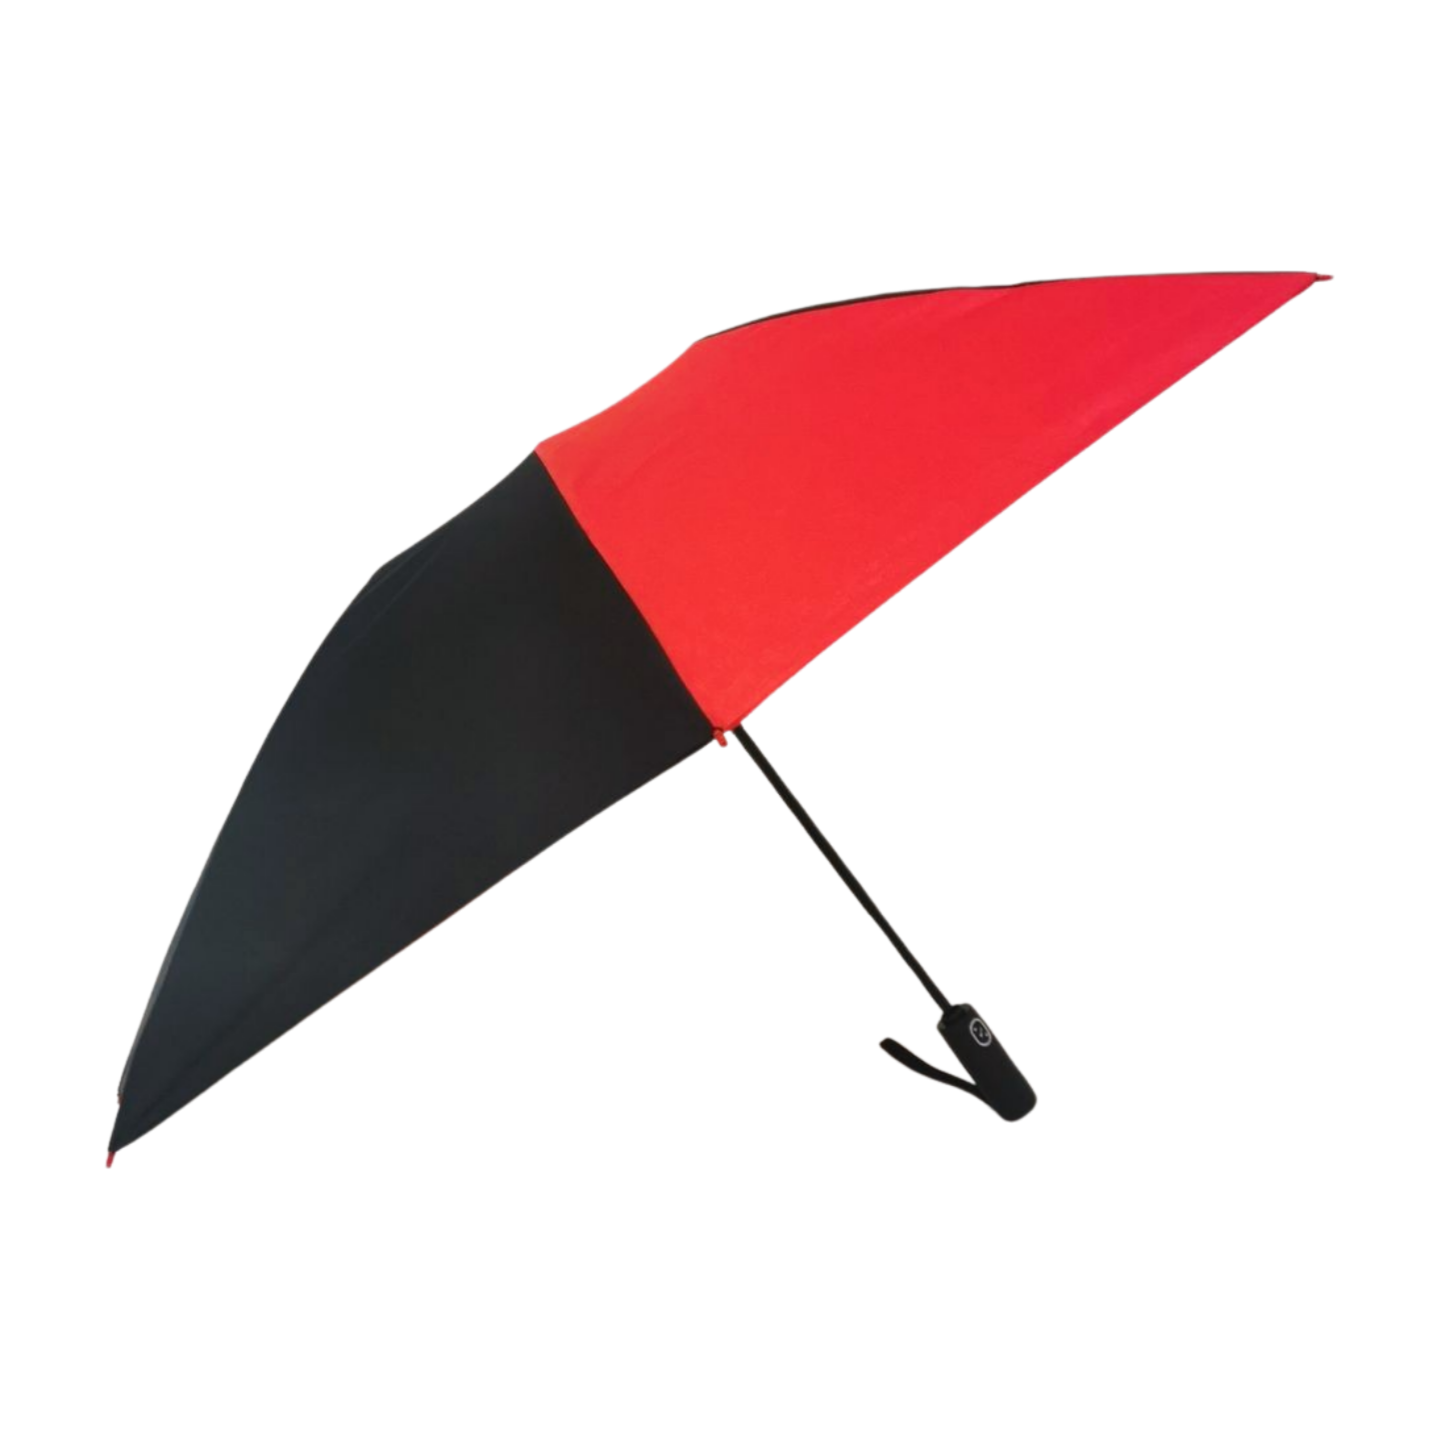 https://www.hodaumbrella.com/upgrade-fiberg…verse-umbrella-product/